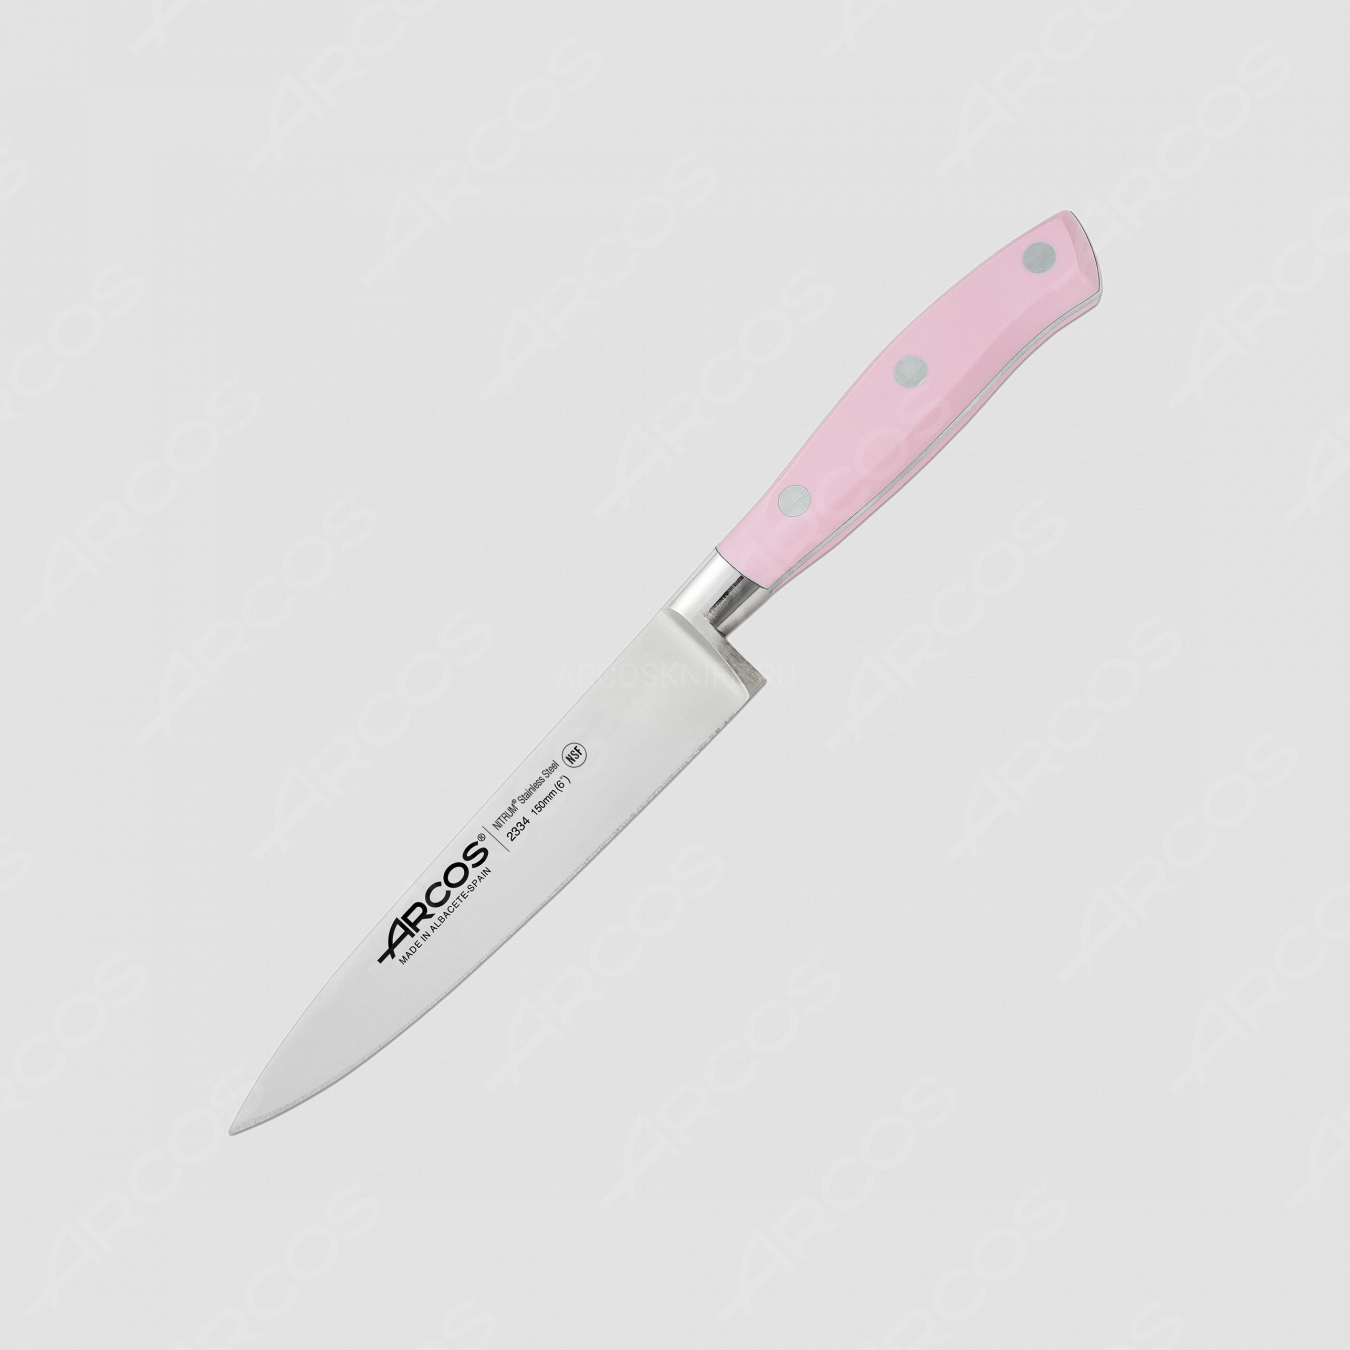 Профессиональный поварской кухонный нож «Шеф» 15 см, серия Riviera Rose, ARCOS, Испания